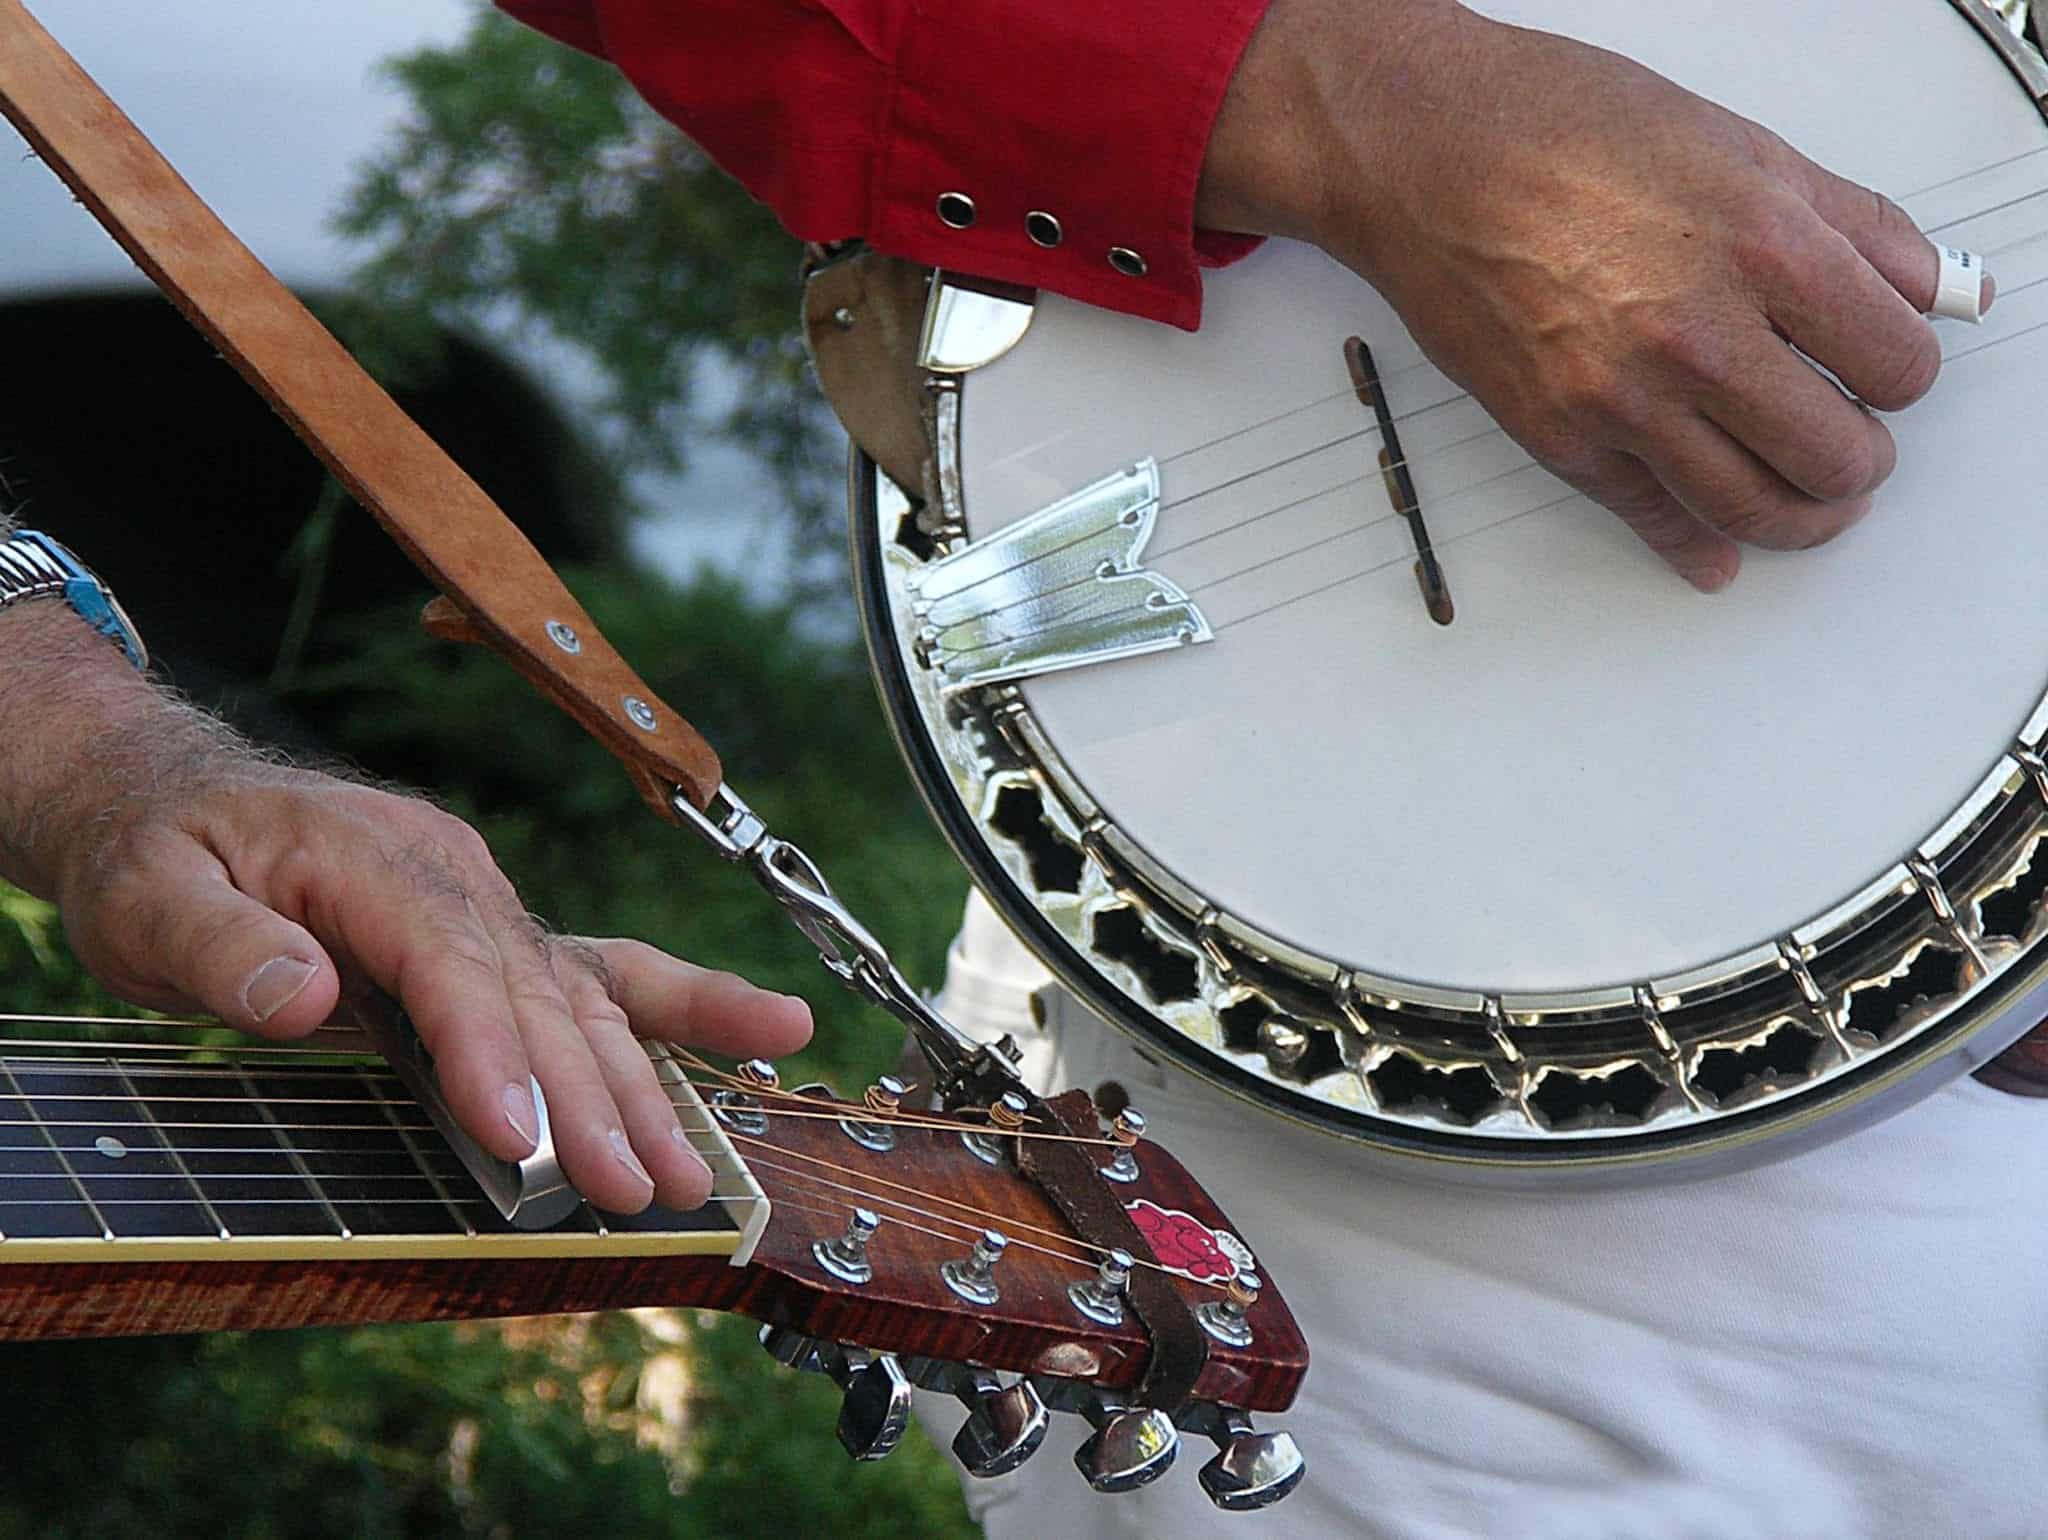 Hands plucking banjos